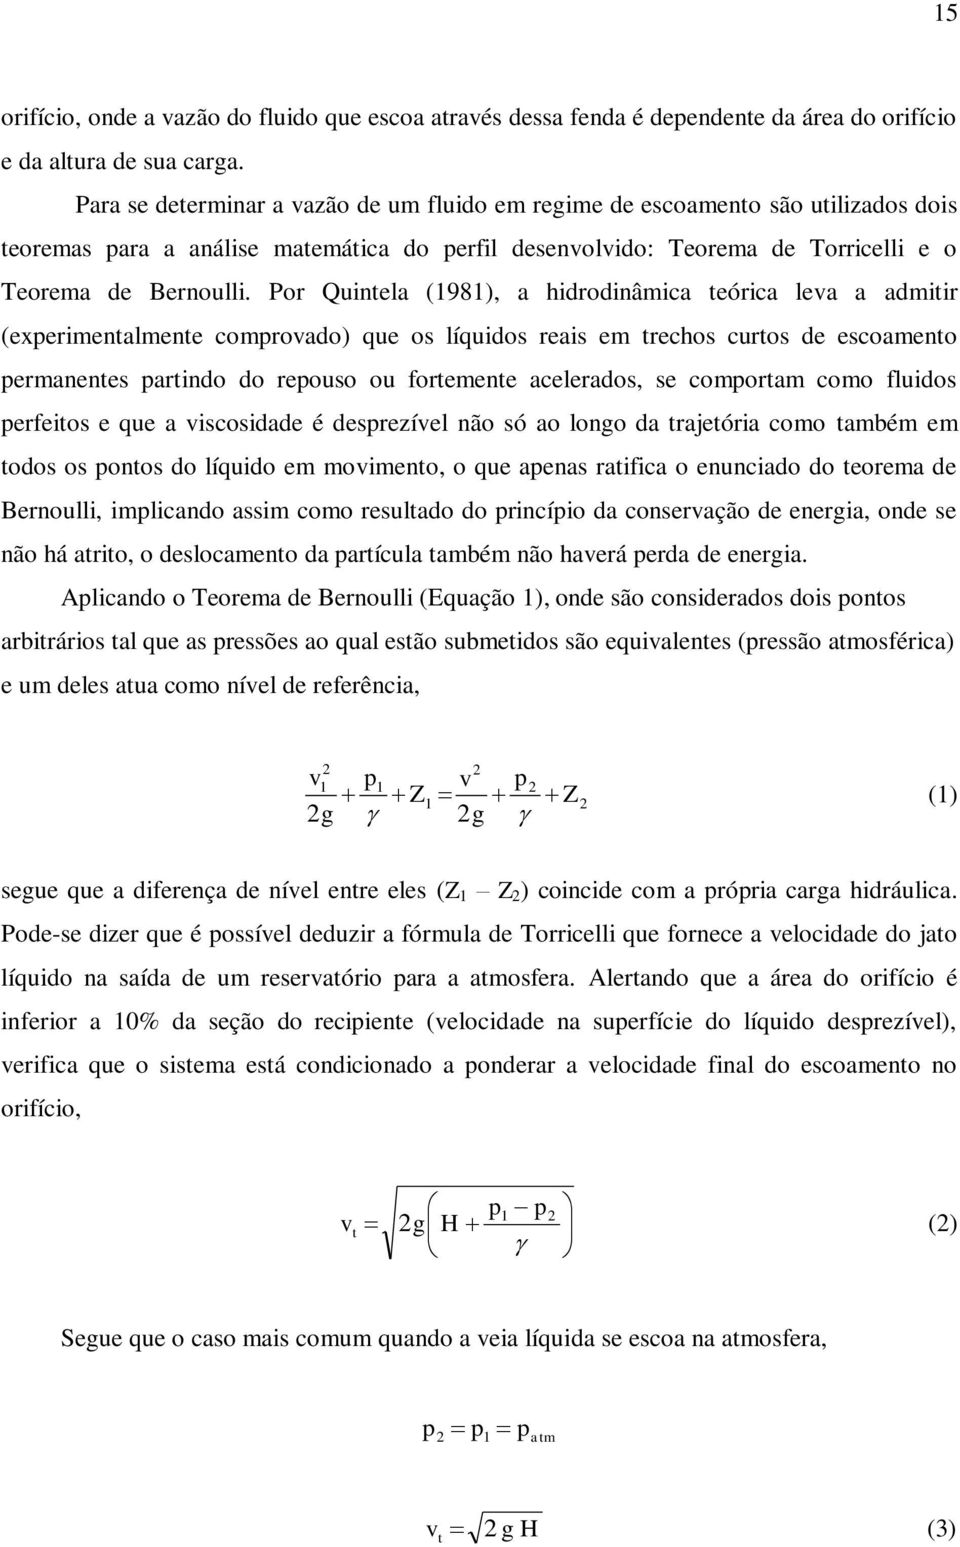 Por Quintela (1981), a hidrodinâmica teórica leva a admitir (experimentalmente comprovado) que os líquidos reais em trechos curtos de escoamento permanentes partindo do repouso ou fortemente